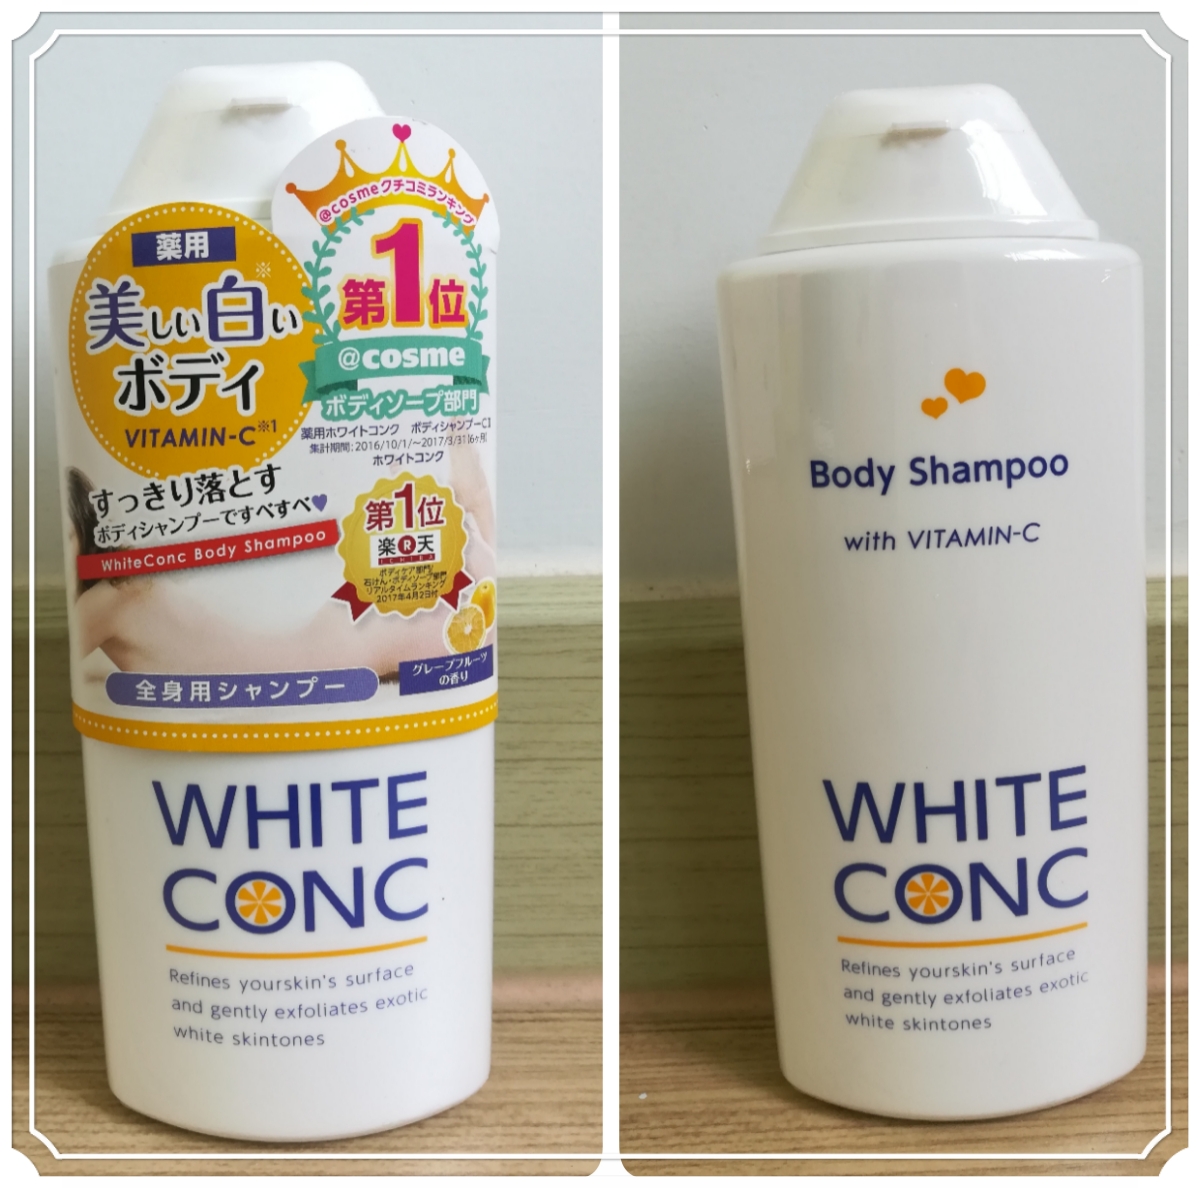 รีวิวครีมอาบน้ำช่วยผิวขาว White Conc Body Shampoo With Vitamin C - Pantip